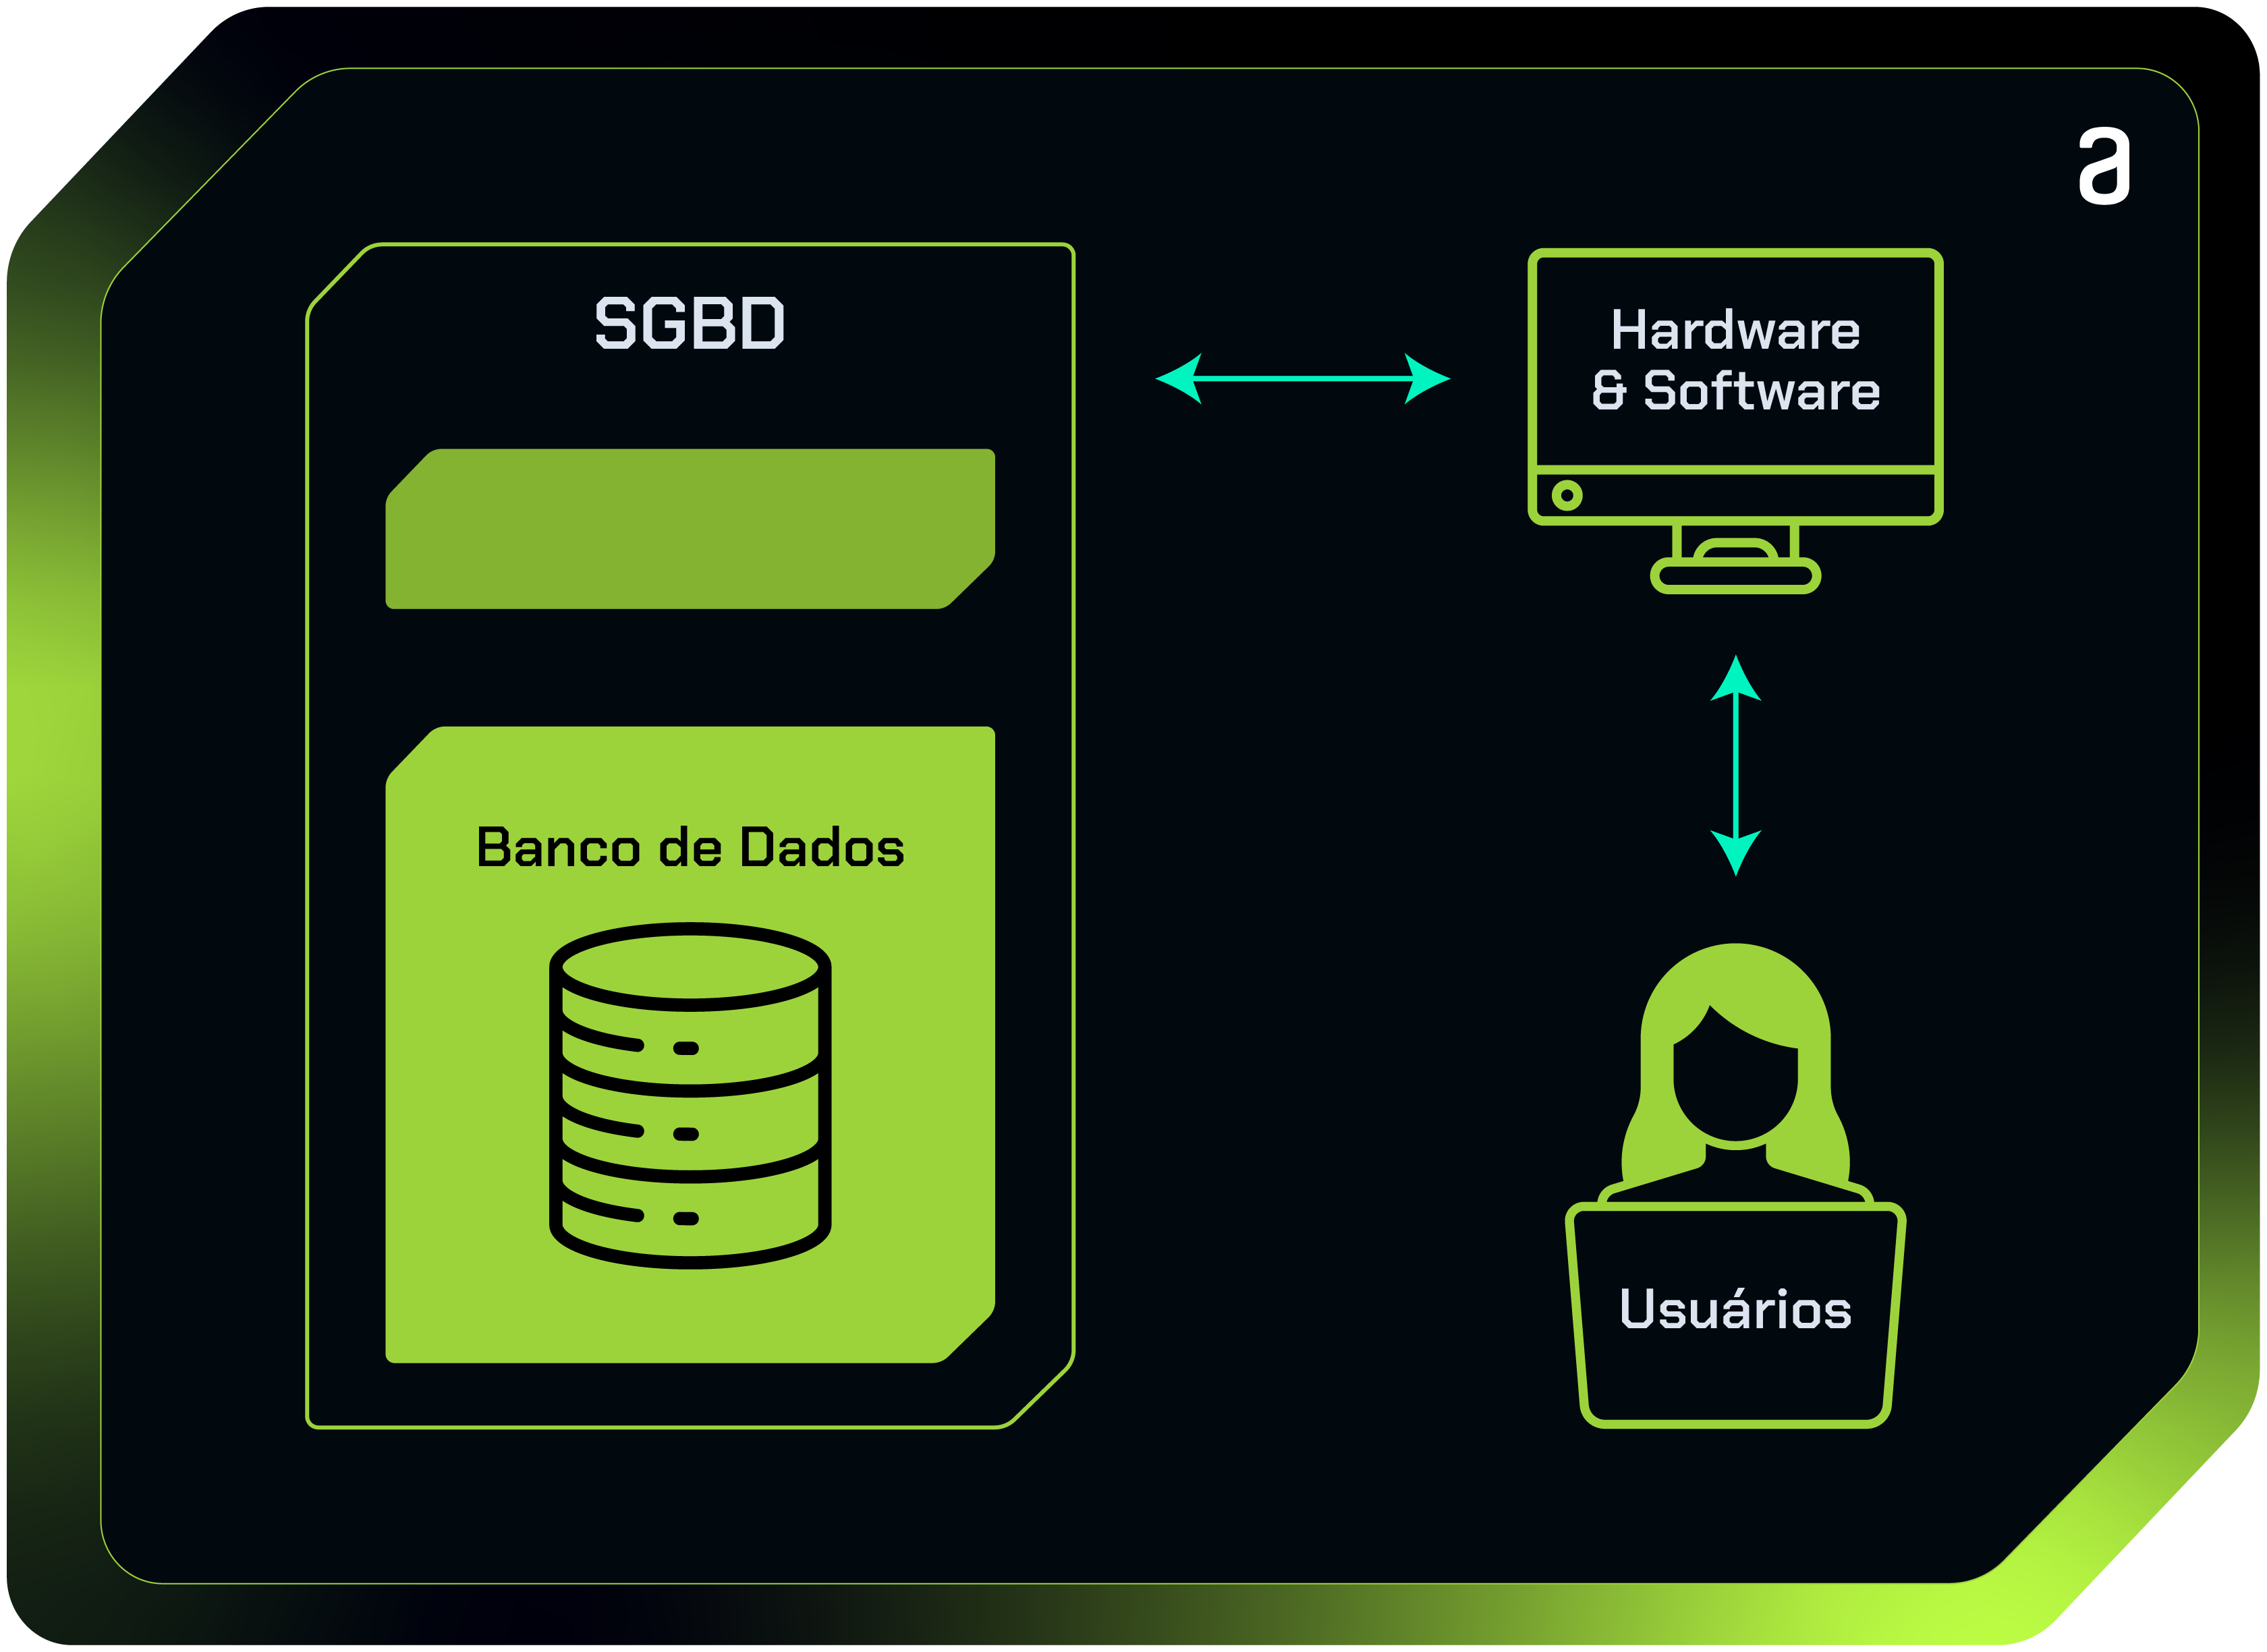 A imagem contém uma representação gráfica de como os bancos de dados funcionam: levam informações para hardware e softwares até pessoas usuárias